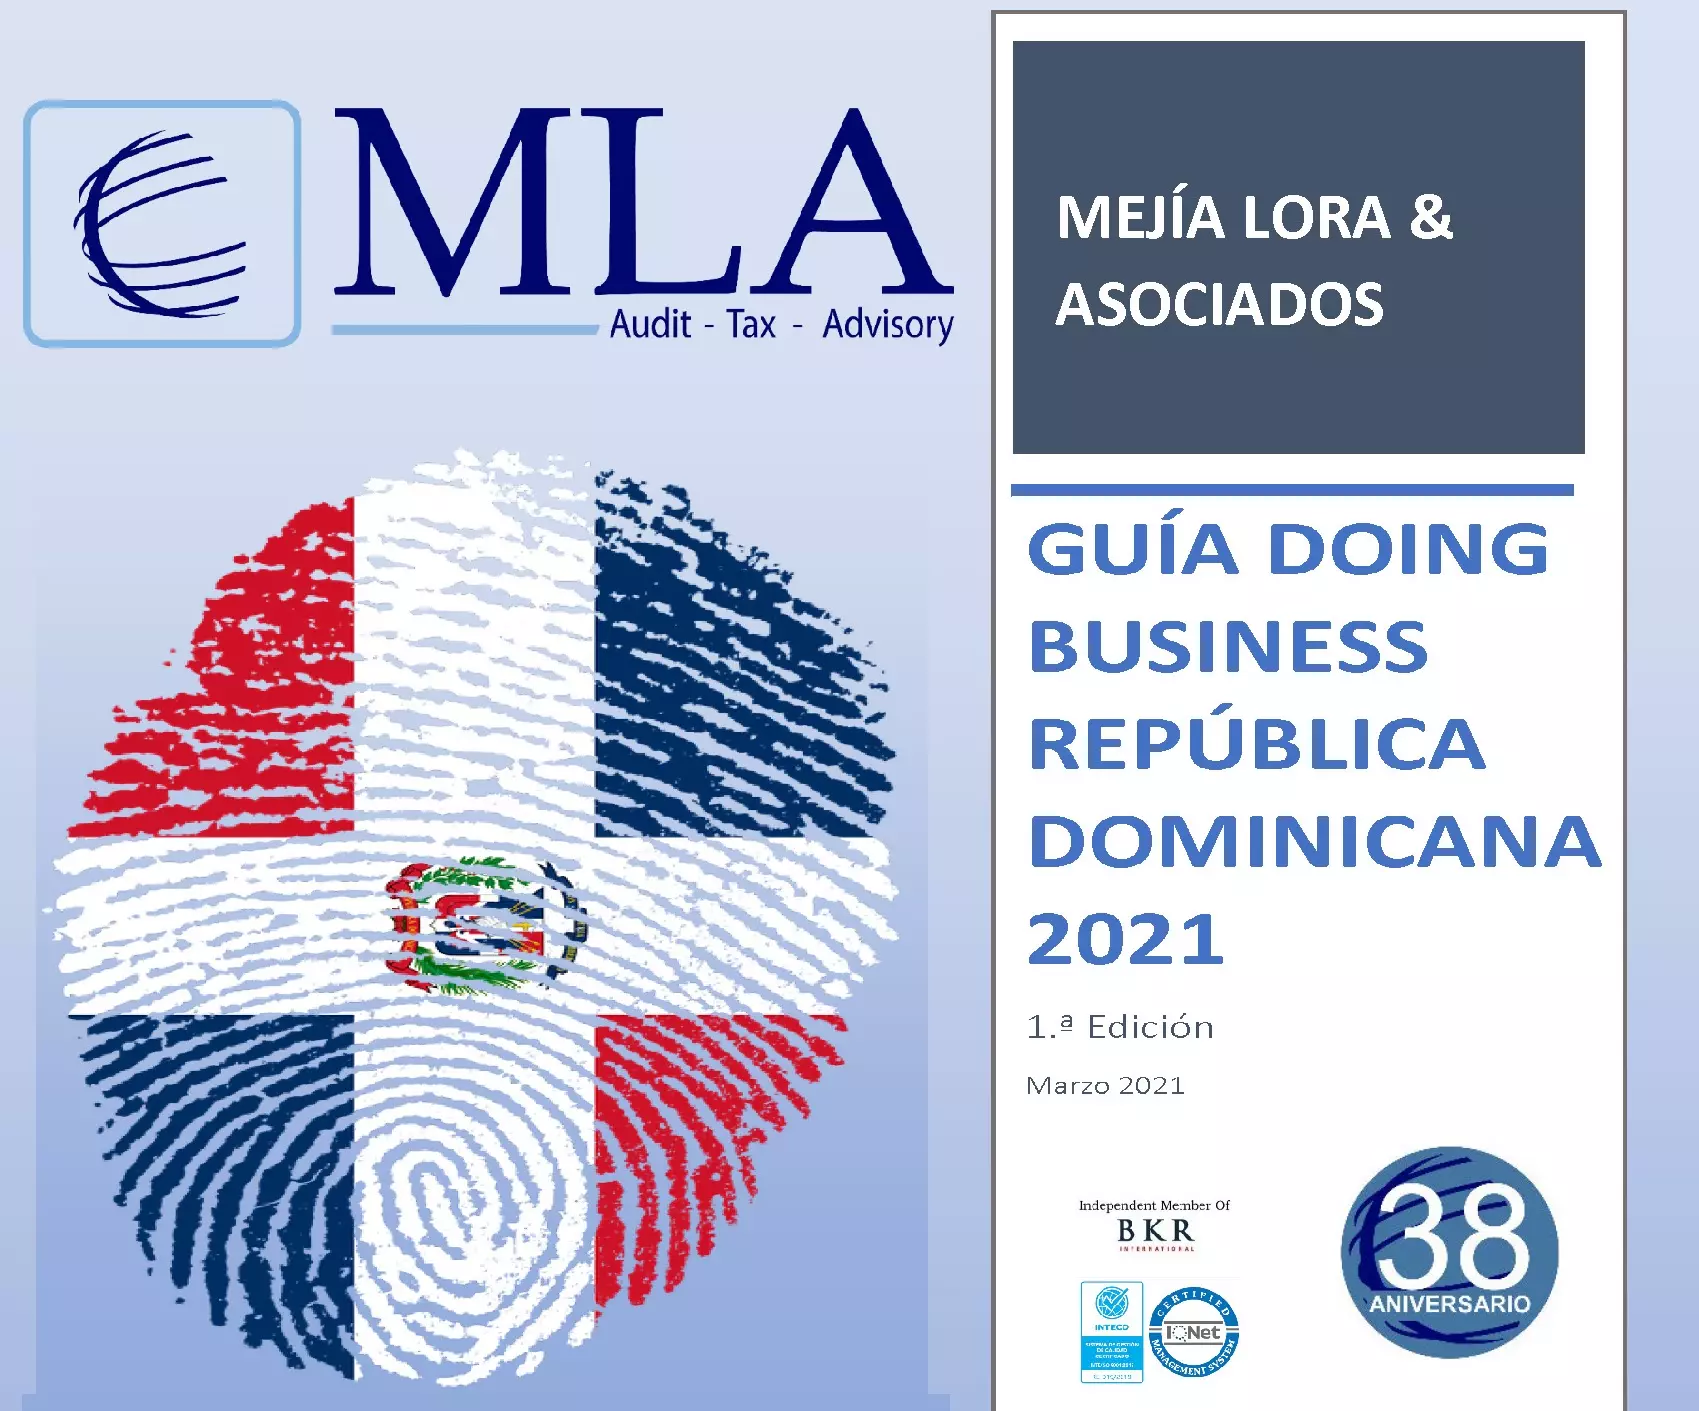 Imagen con el escudo de la bandera dominicana